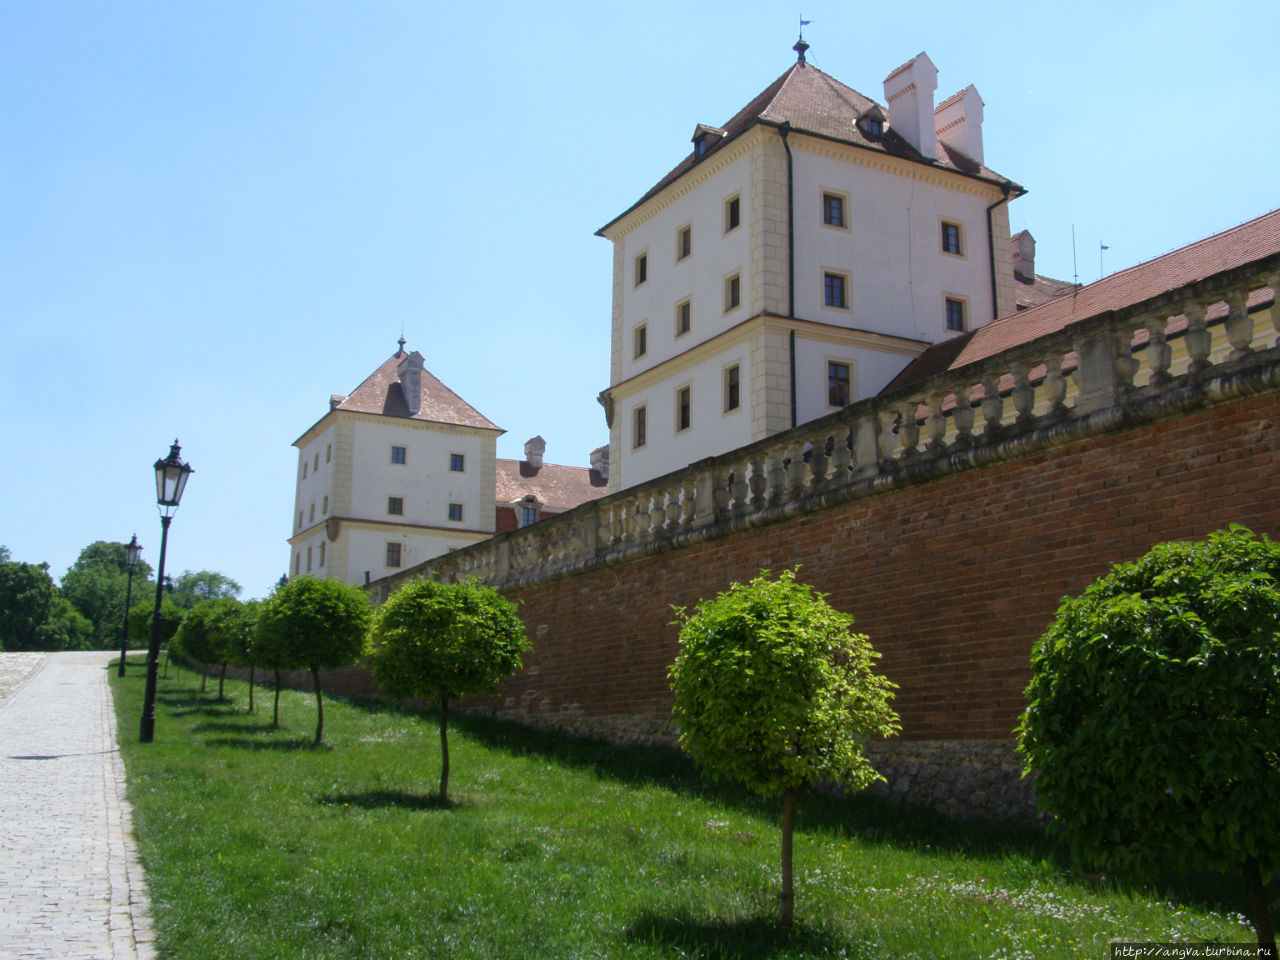 Леднице — наследие князей Лихтенштейн Леднице, Чехия